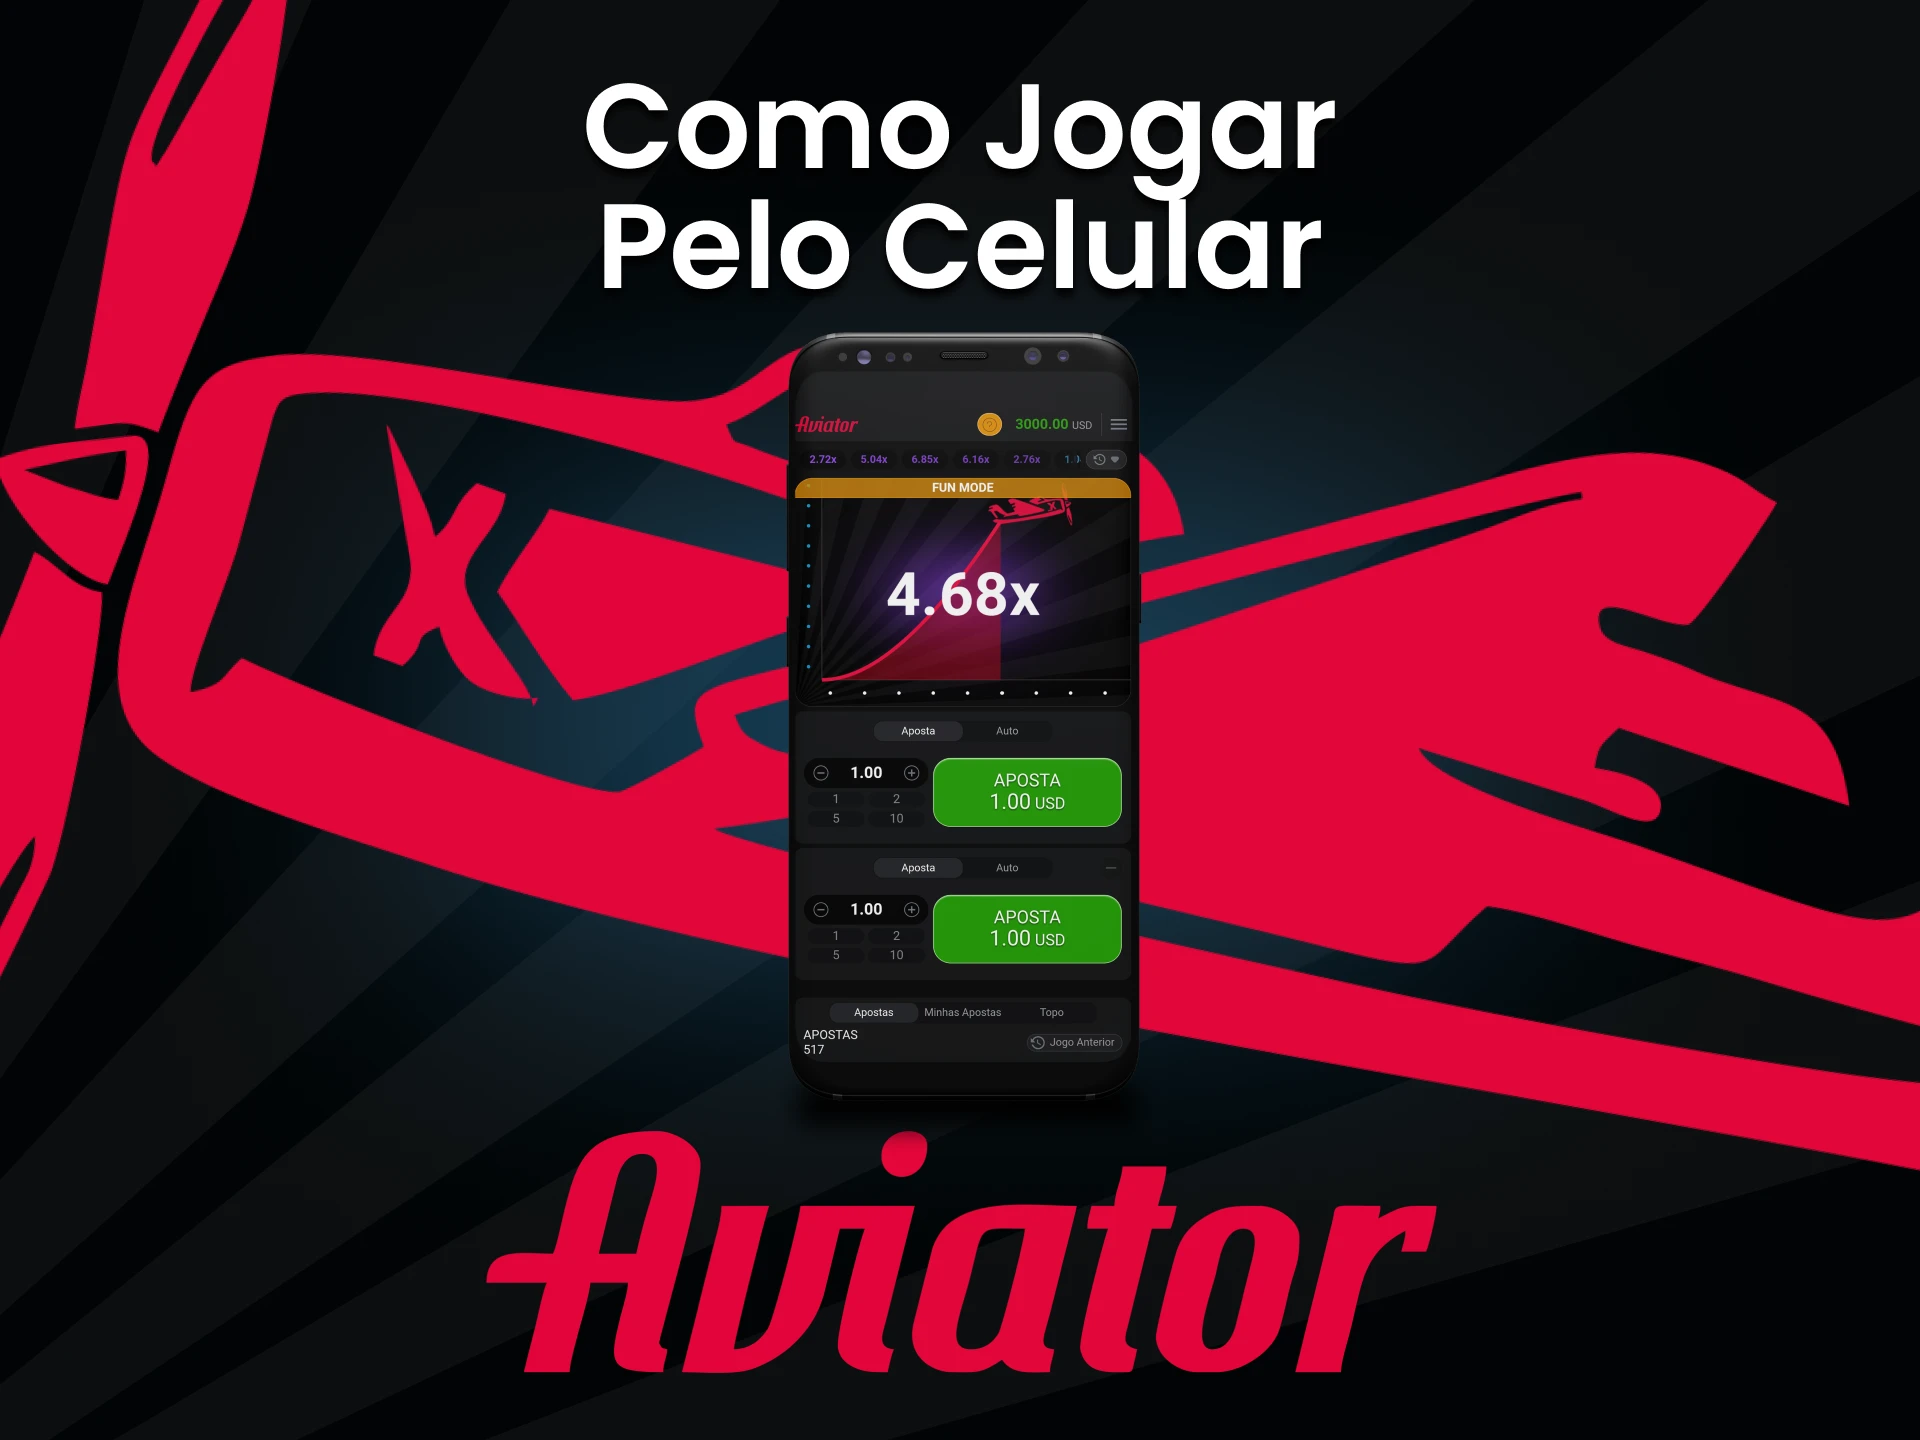 Tente jogar Aviator através do aplicativo em seu smartphone.